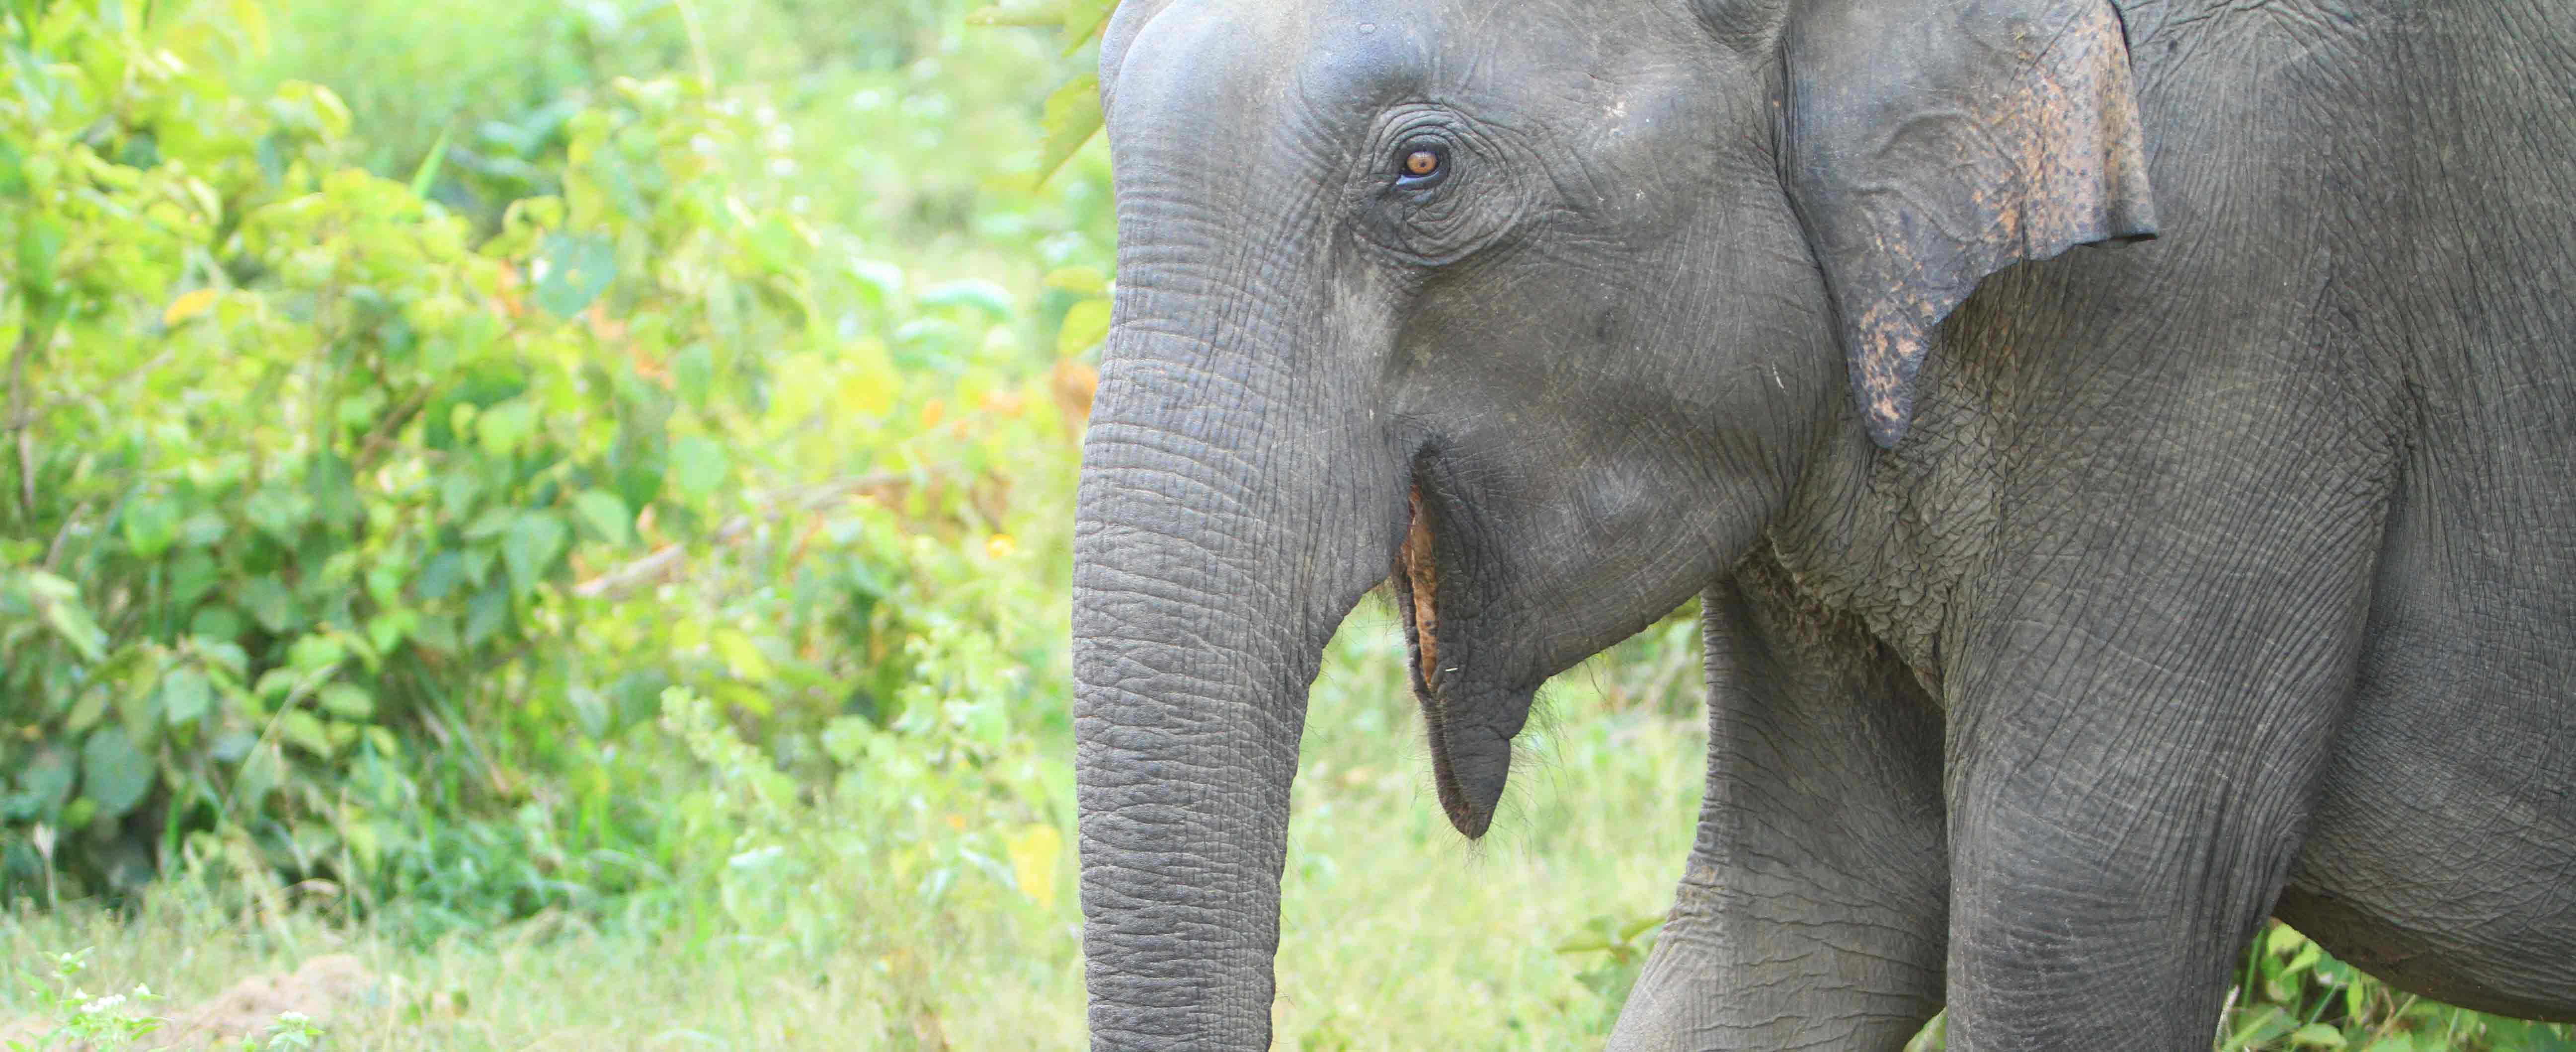 Elephant tours Sri Lanka - Elephant at Udawalawe National Prak